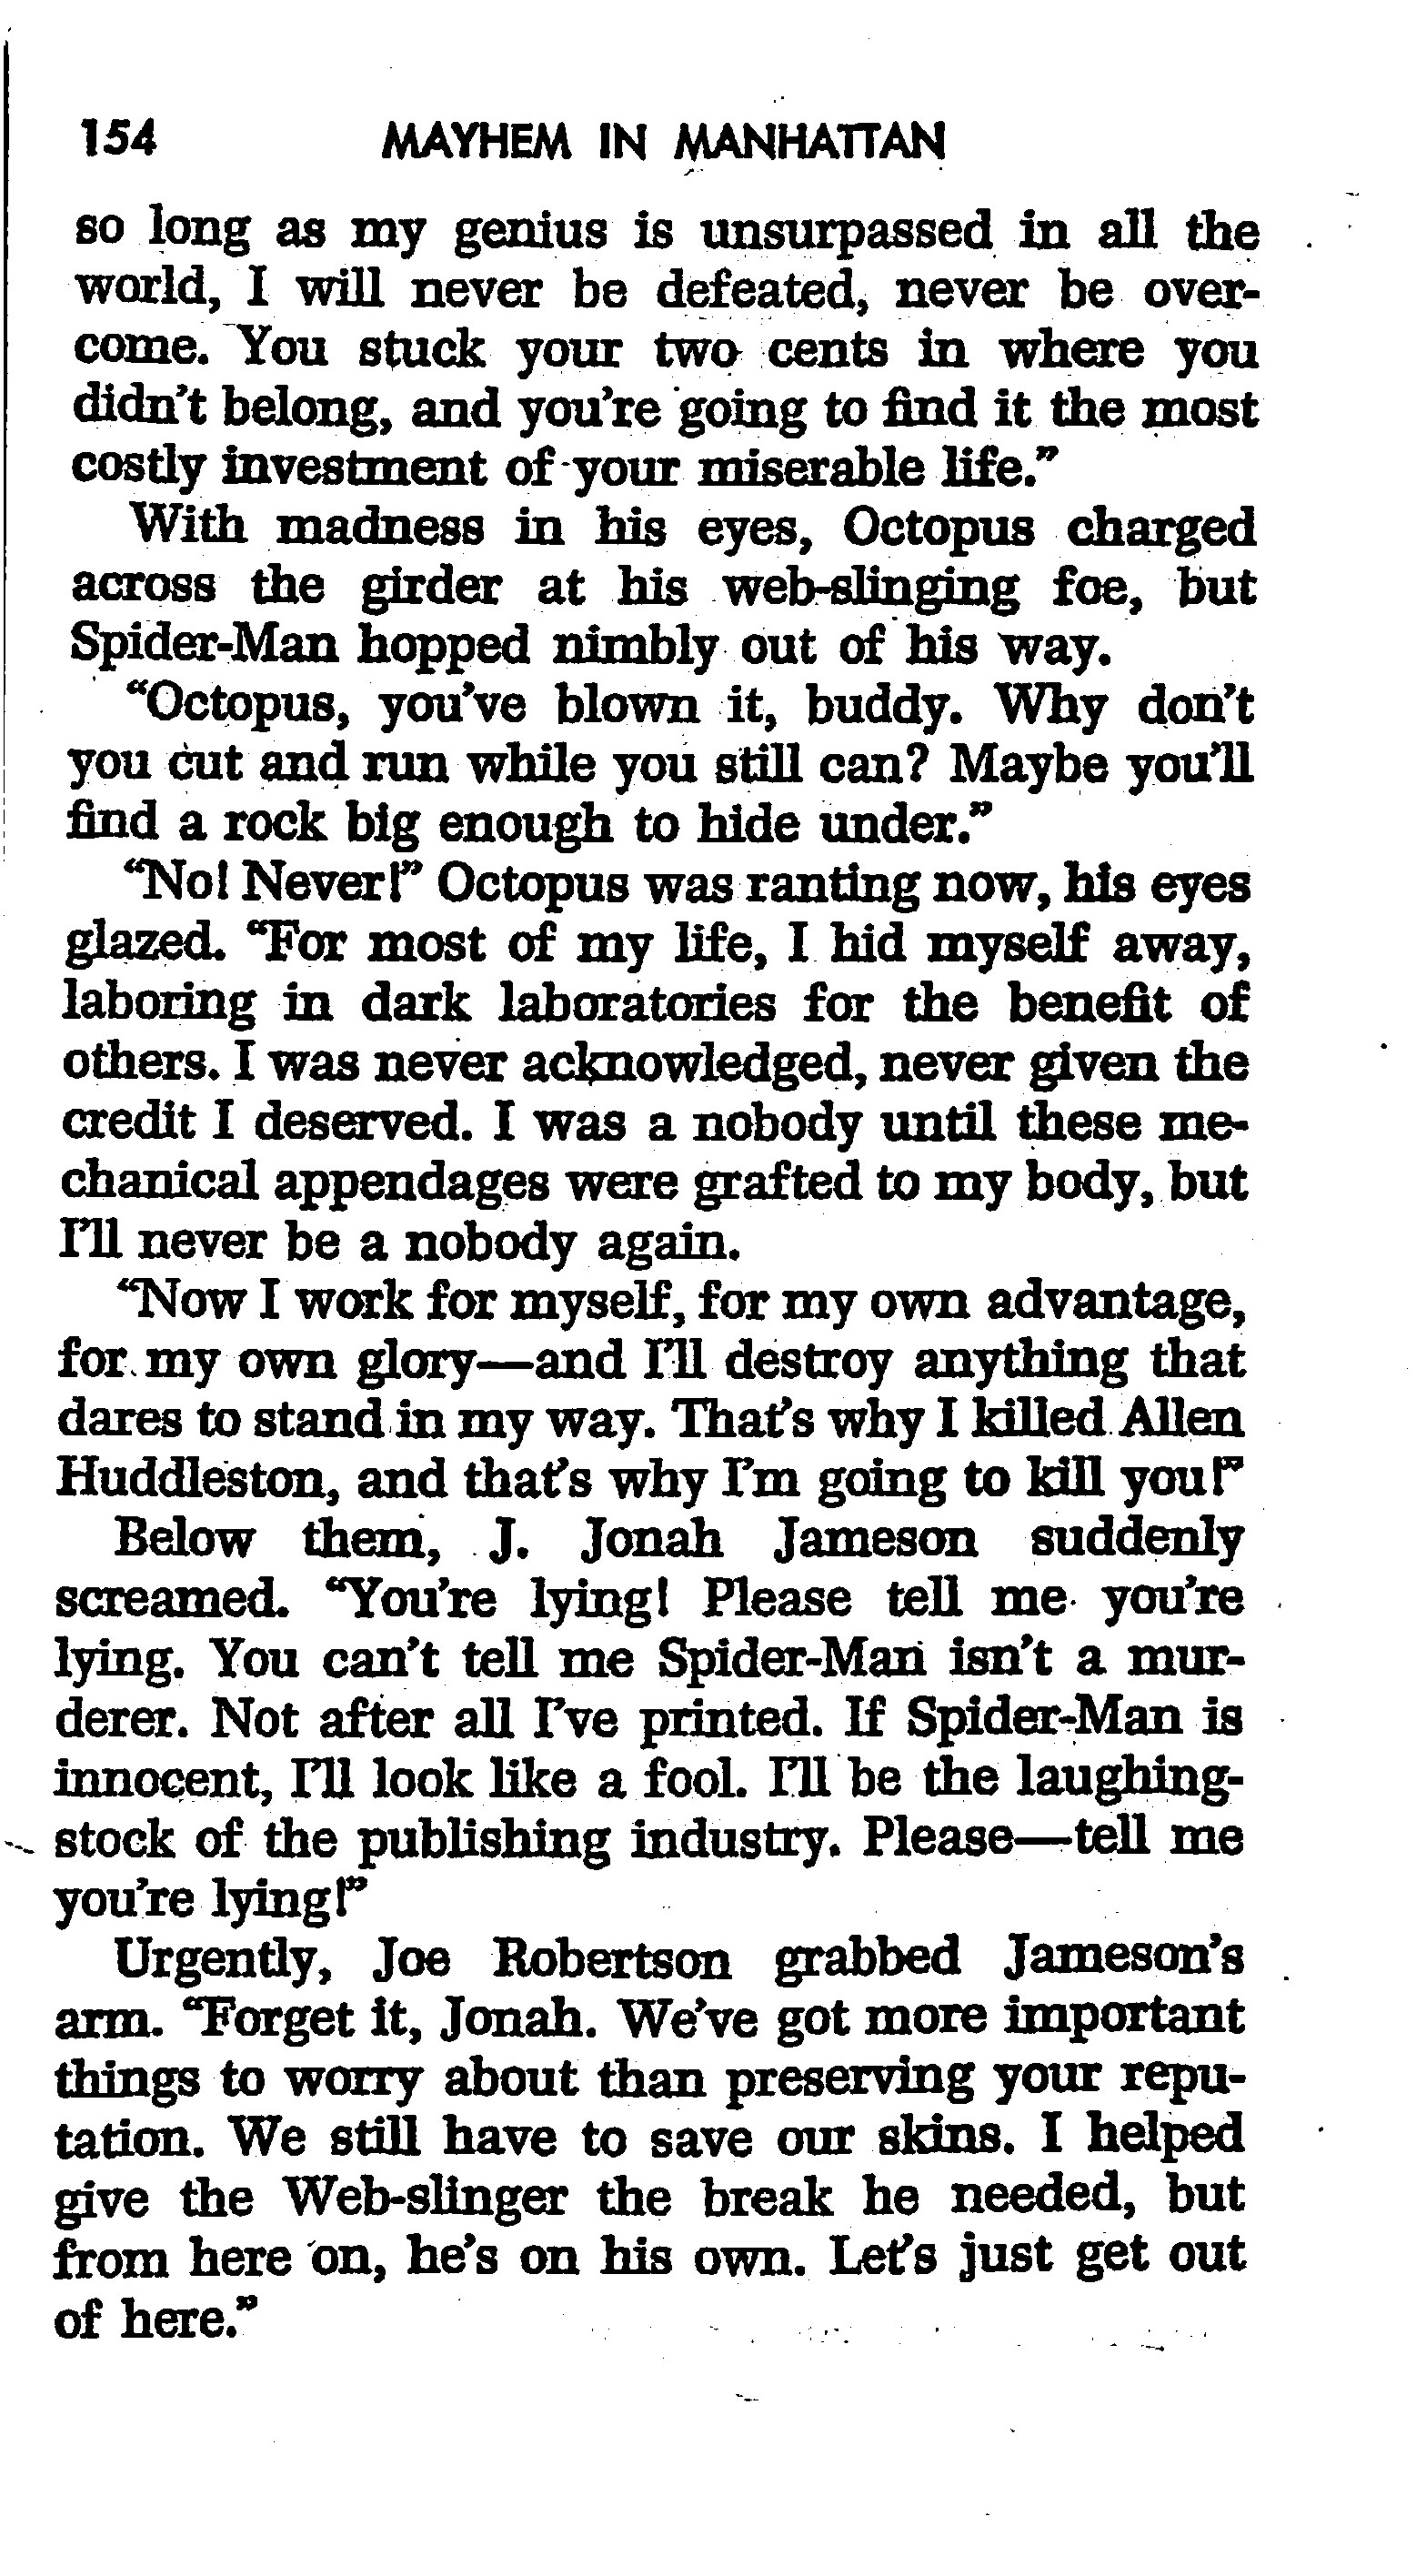 Read online The Amazing Spider-Man: Mayhem in Manhattan comic -  Issue # TPB (Part 2) - 56